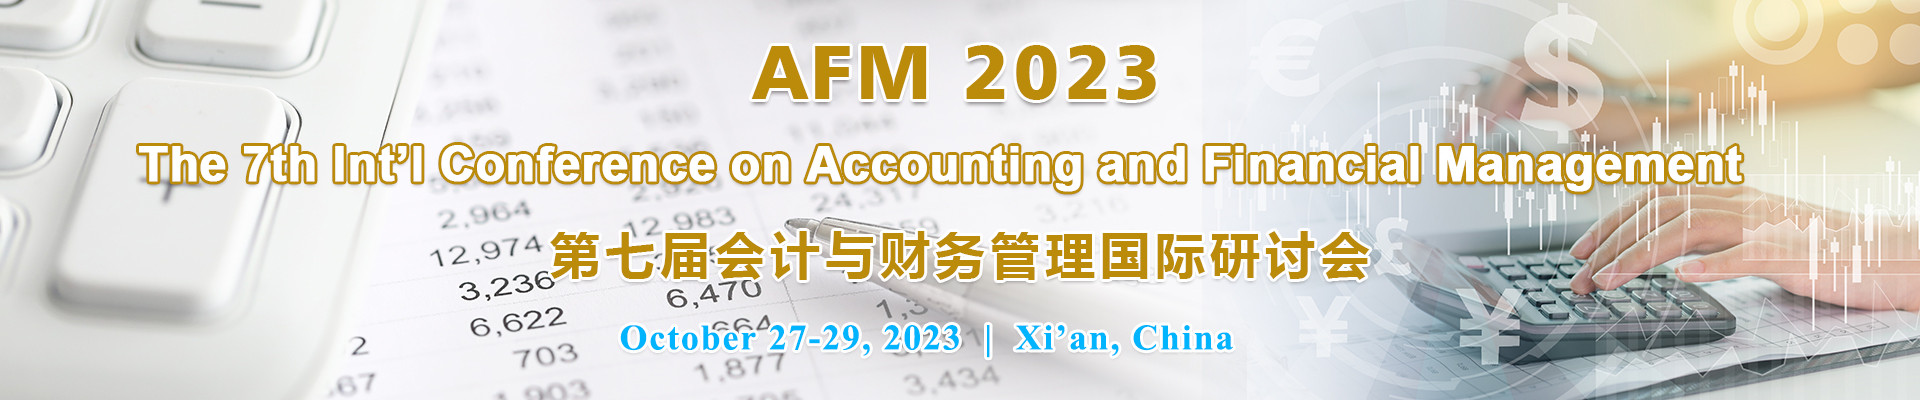 第七届会计与财务管理国际研讨会 (AFM 2023) 